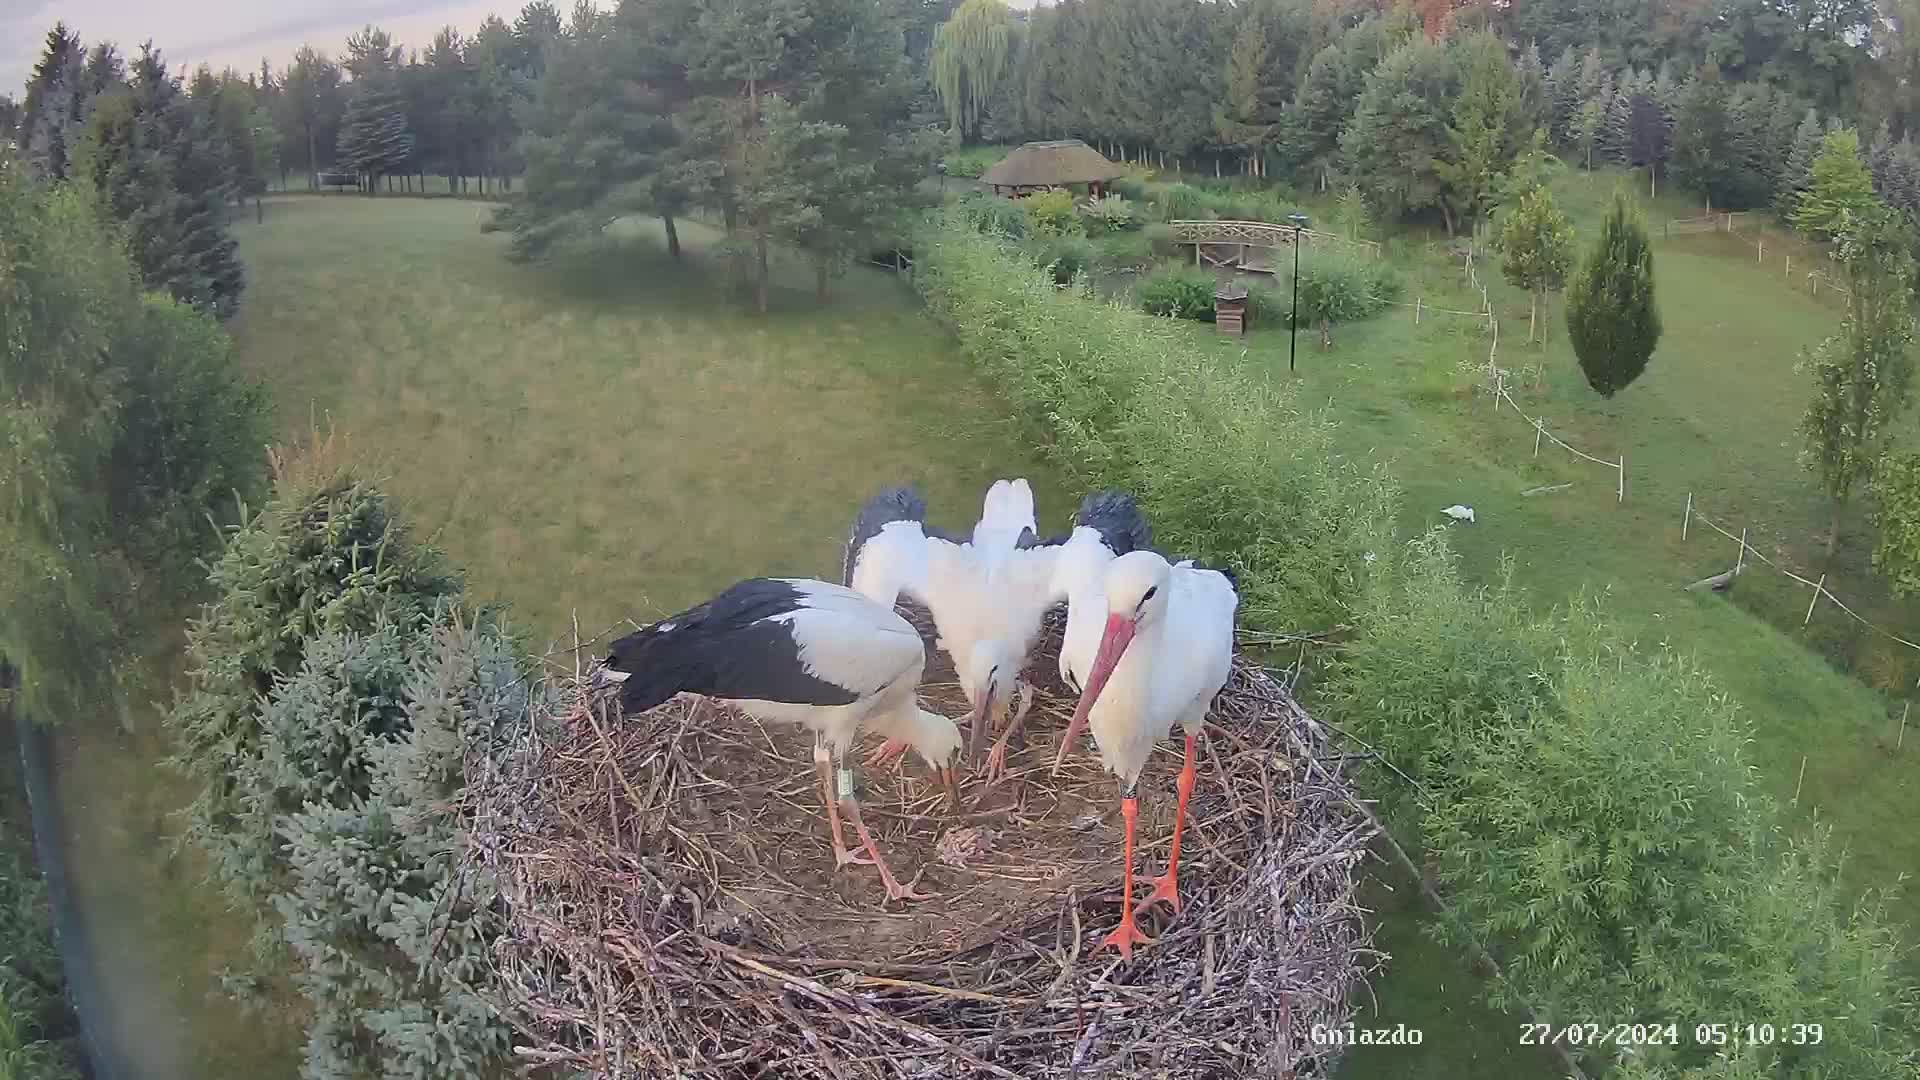 Strzelce - stork's nest